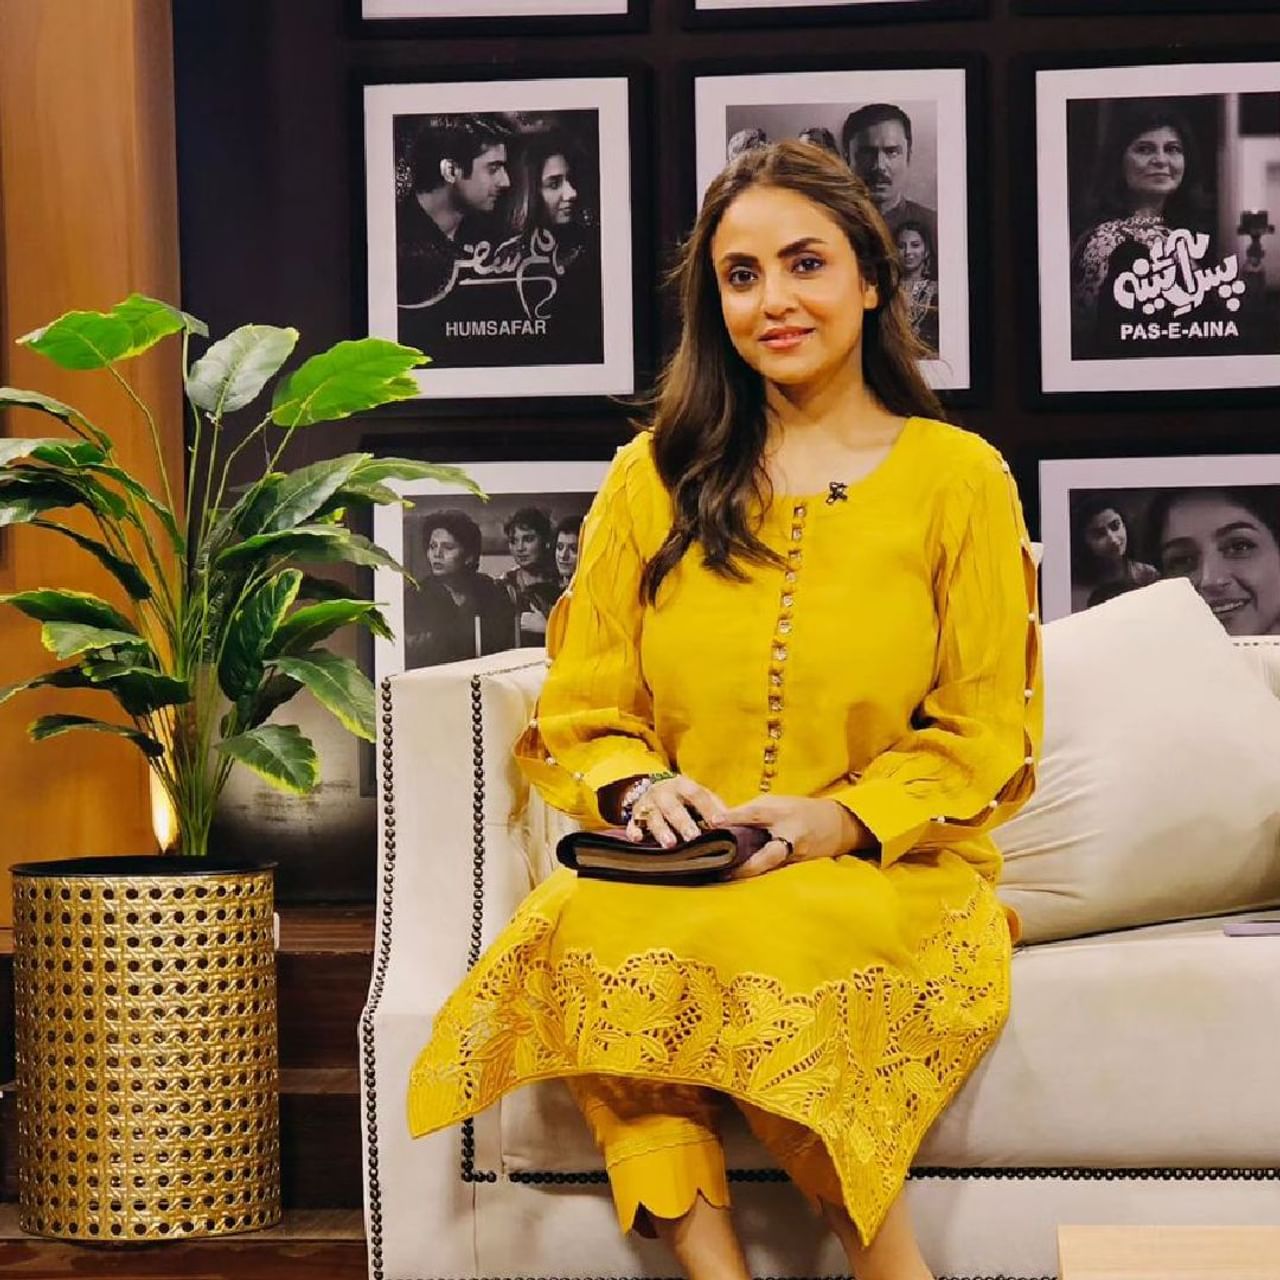 नादिया खान ही पाकिस्तानची प्रसिद्ध टीव्ही होस्ट आणि अभिनेत्री आहे. 'नादिया खान शो' हा प्रेक्षकांमध्ये फार लोकप्रिय आहे. एका टॉक शोमध्ये नादियाने तिच्या लग्नातील वादाचा खुलासा केला. नादियाचं पहिलं लग्न खवर इक्बालशी झालं होतं. 
